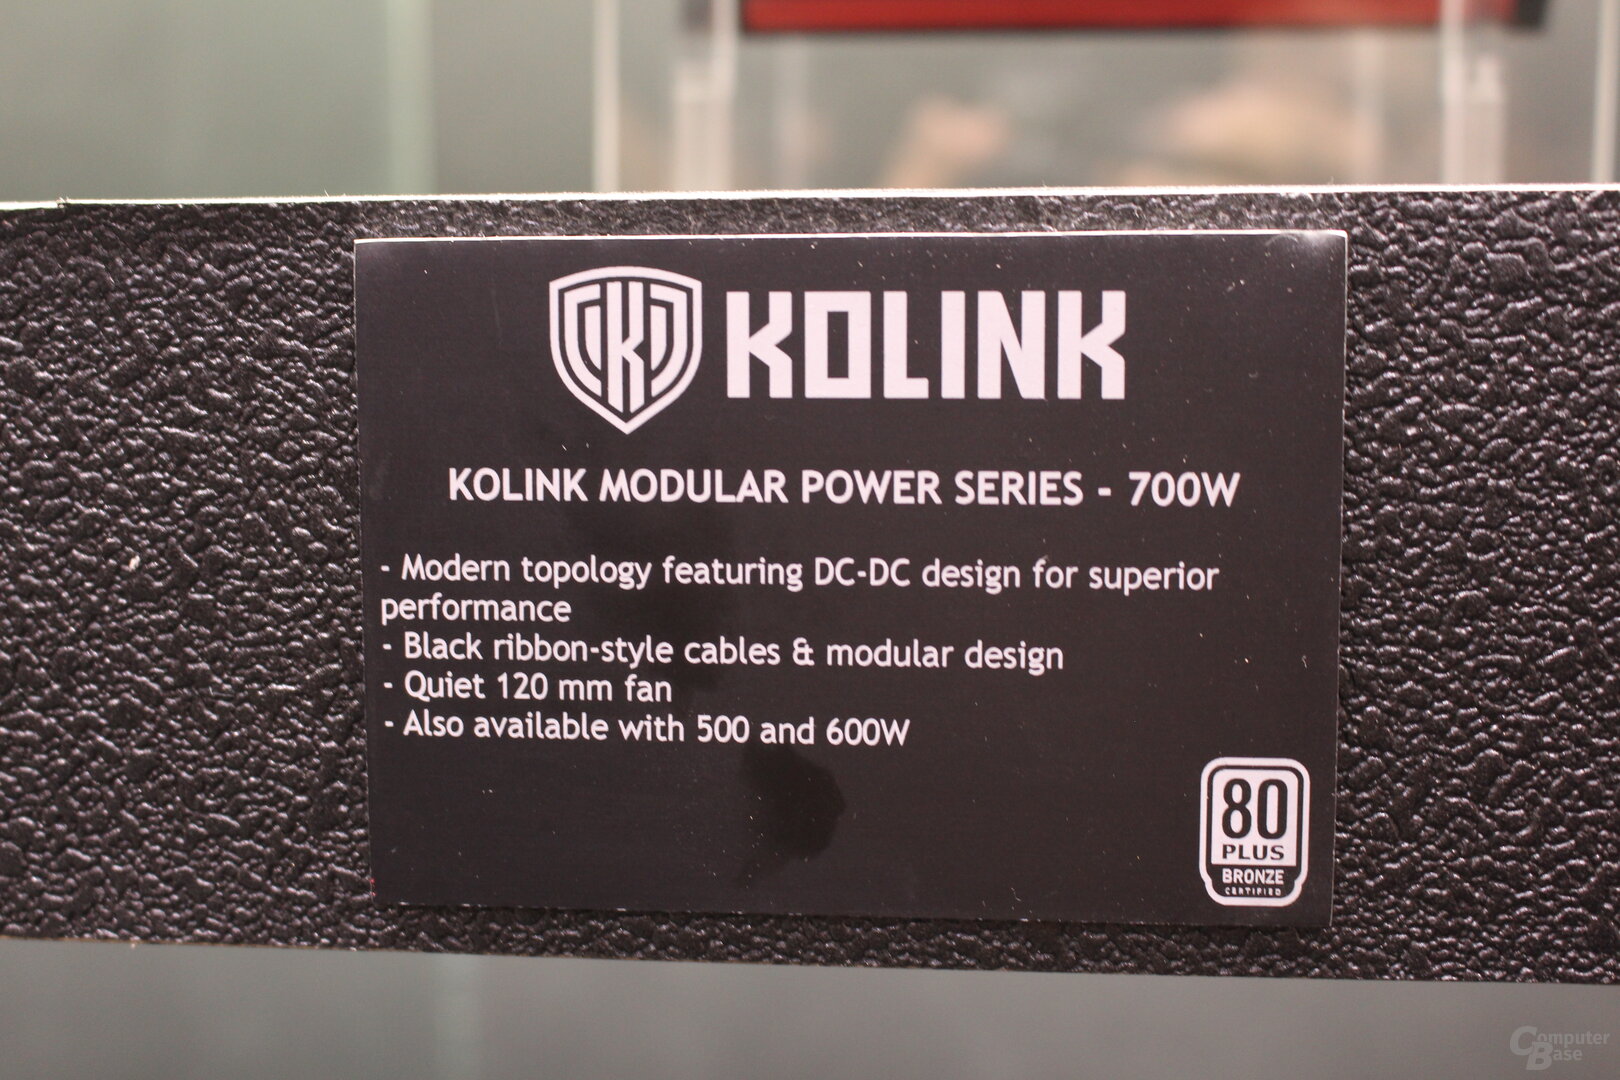 Kolink Modular Power Series